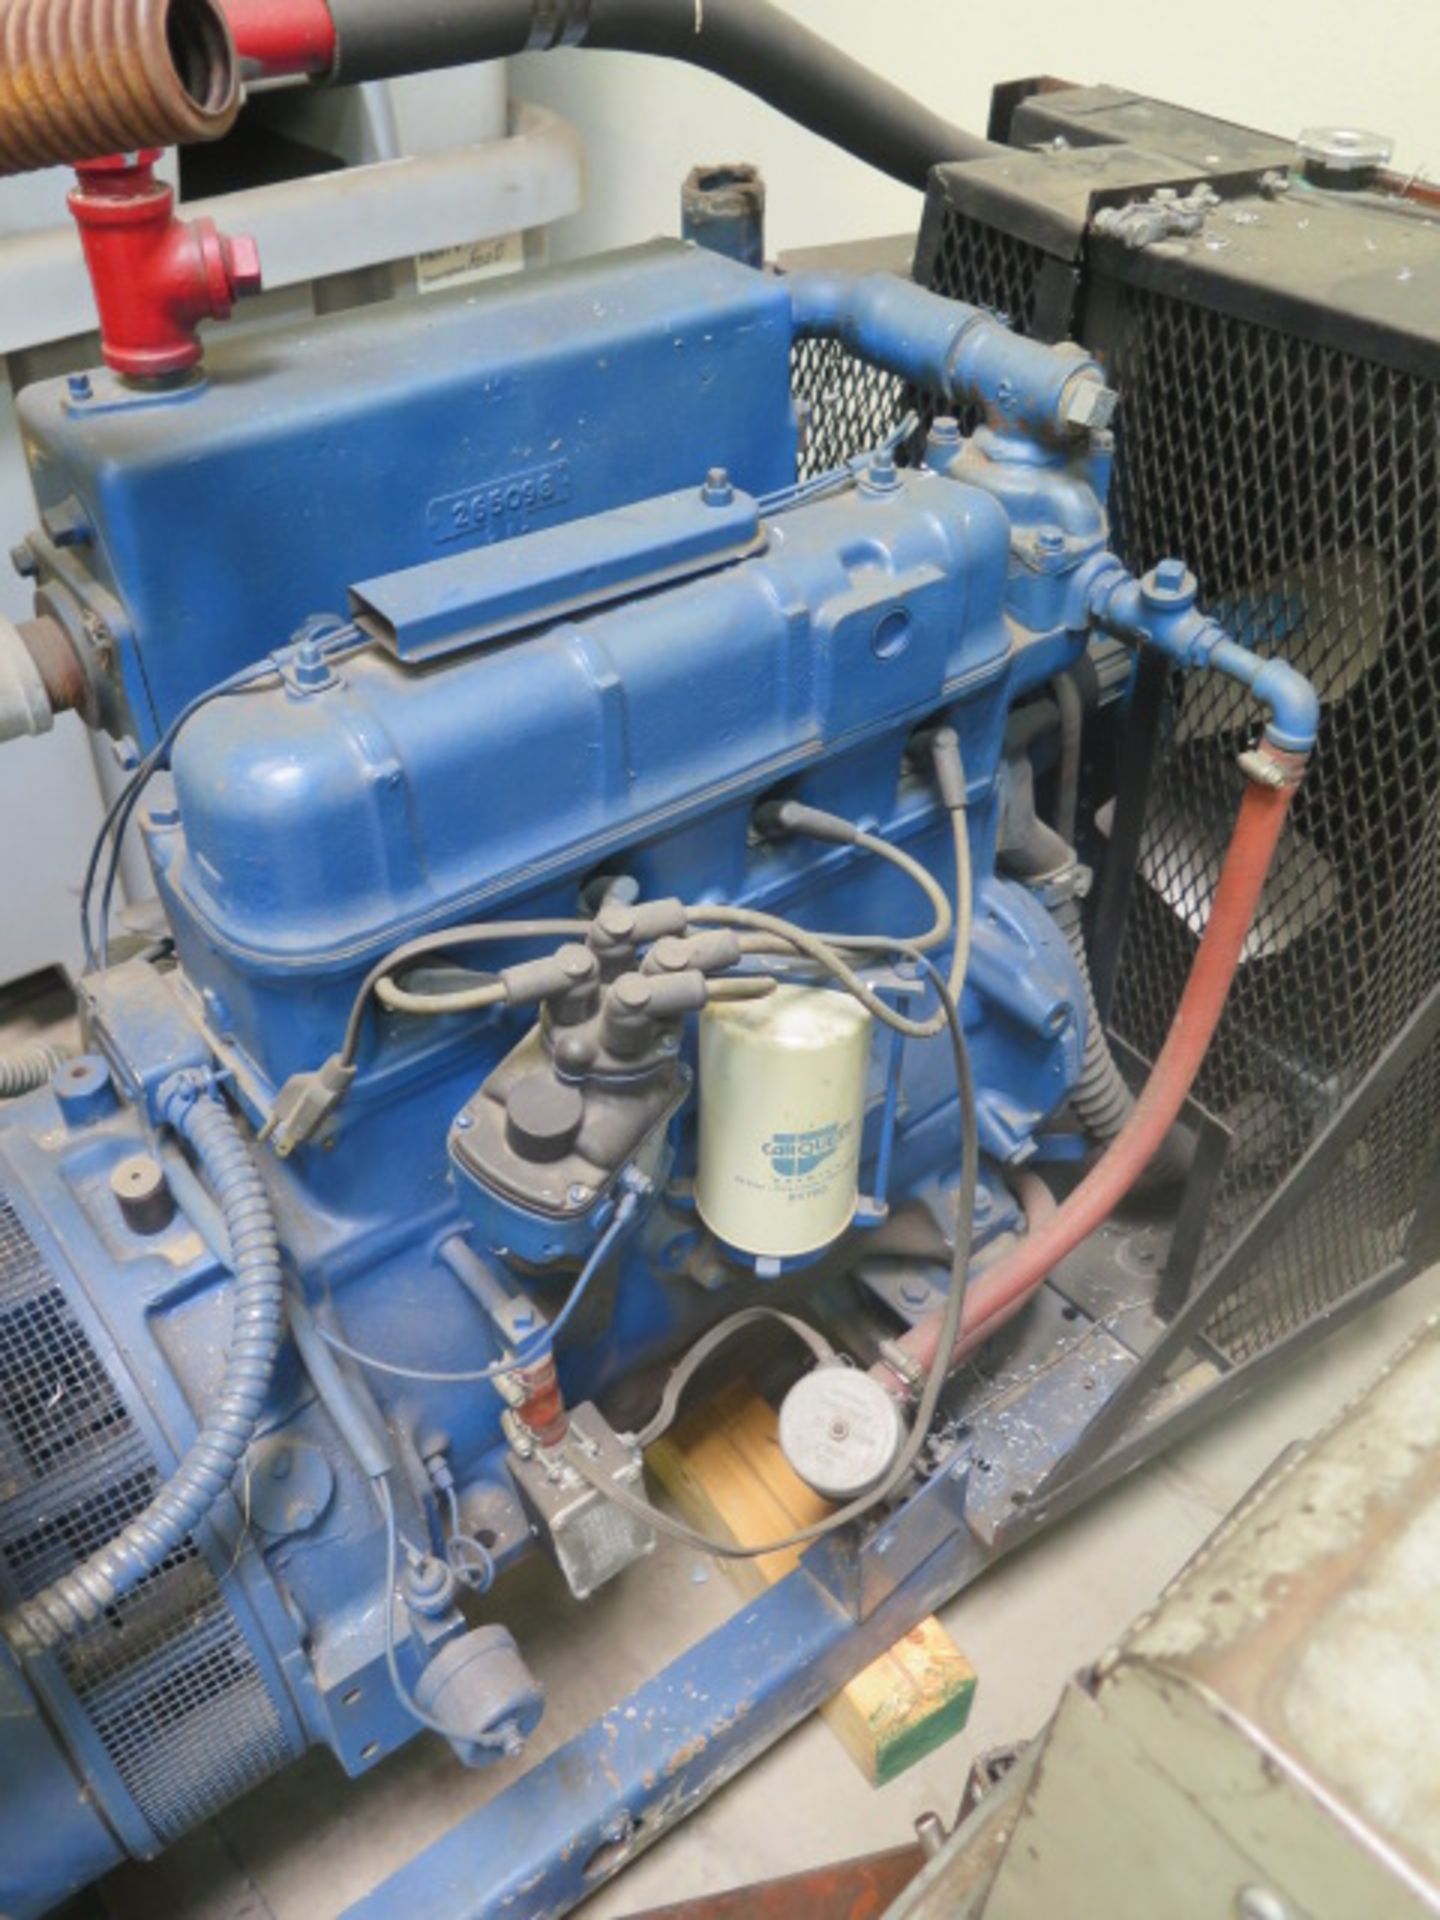 Kohler mdl. 15R58 15kW Backup Generator w/ 4-Cylinder Engine, 389 Hours - Image 4 of 6